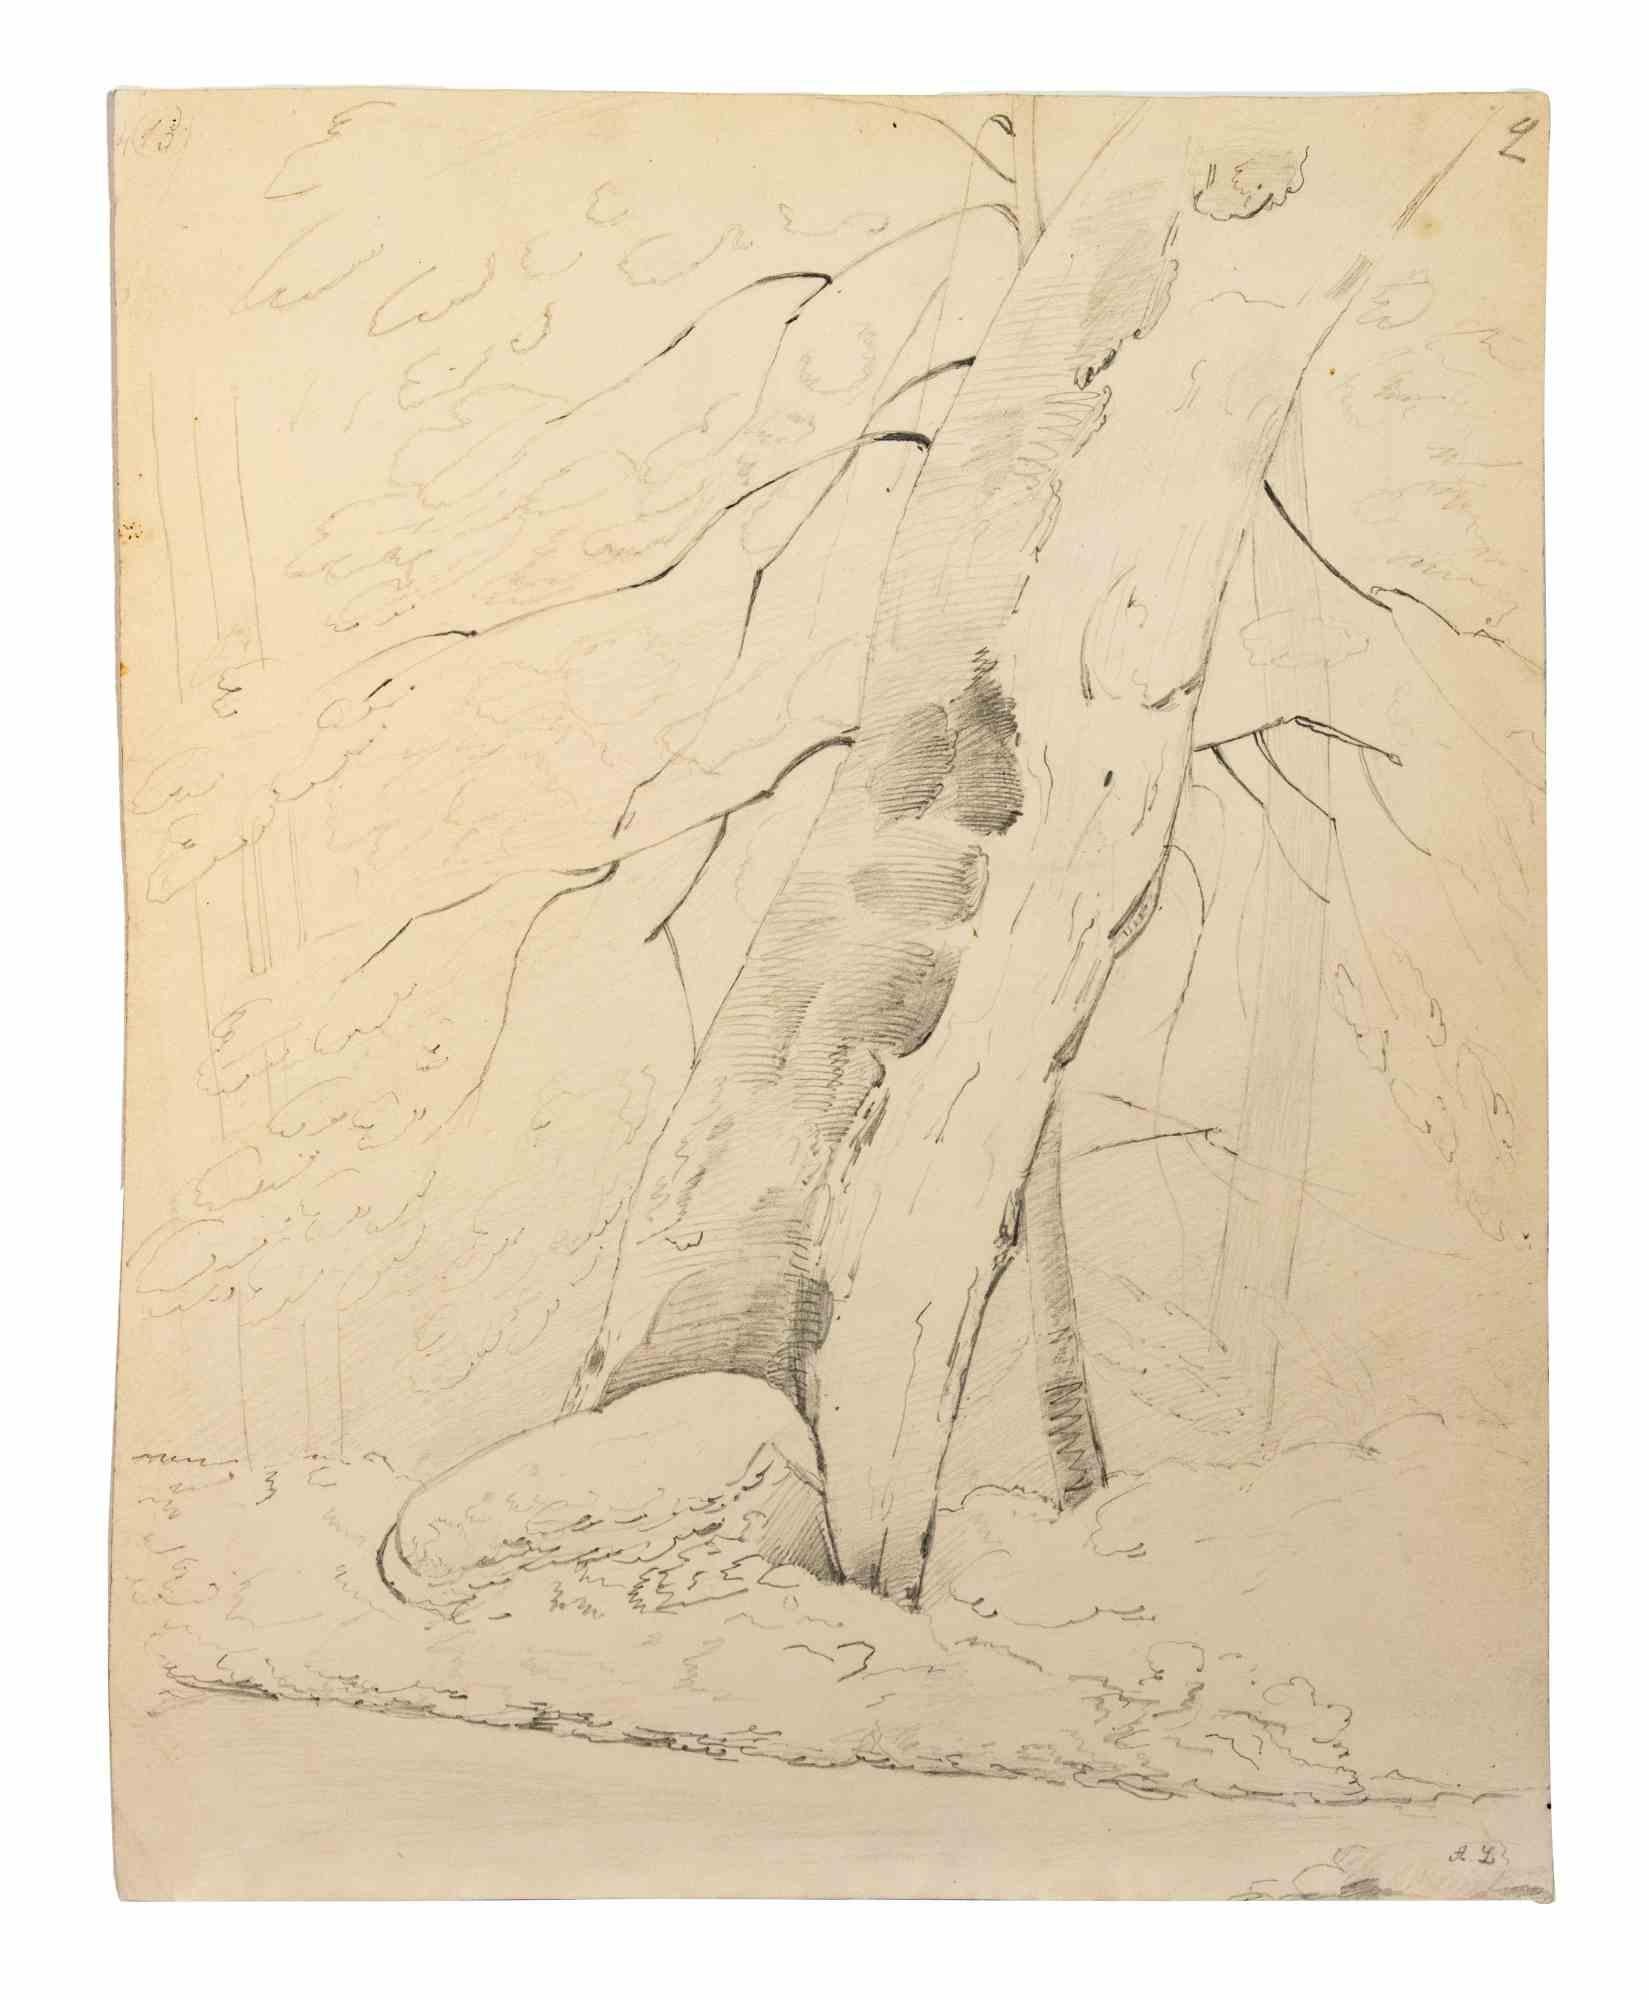 Baum des Lebens ist eine Bleistiftzeichnung von Alphonse Legros (1837-1911).

Guter Zustand auf vergilbtem Papier.

Monogramm des Autors in der rechten unteren Ecke des Kunstwerks.

Alphonse Legros (Dijon, 1837 - Watford, 1911) war ein